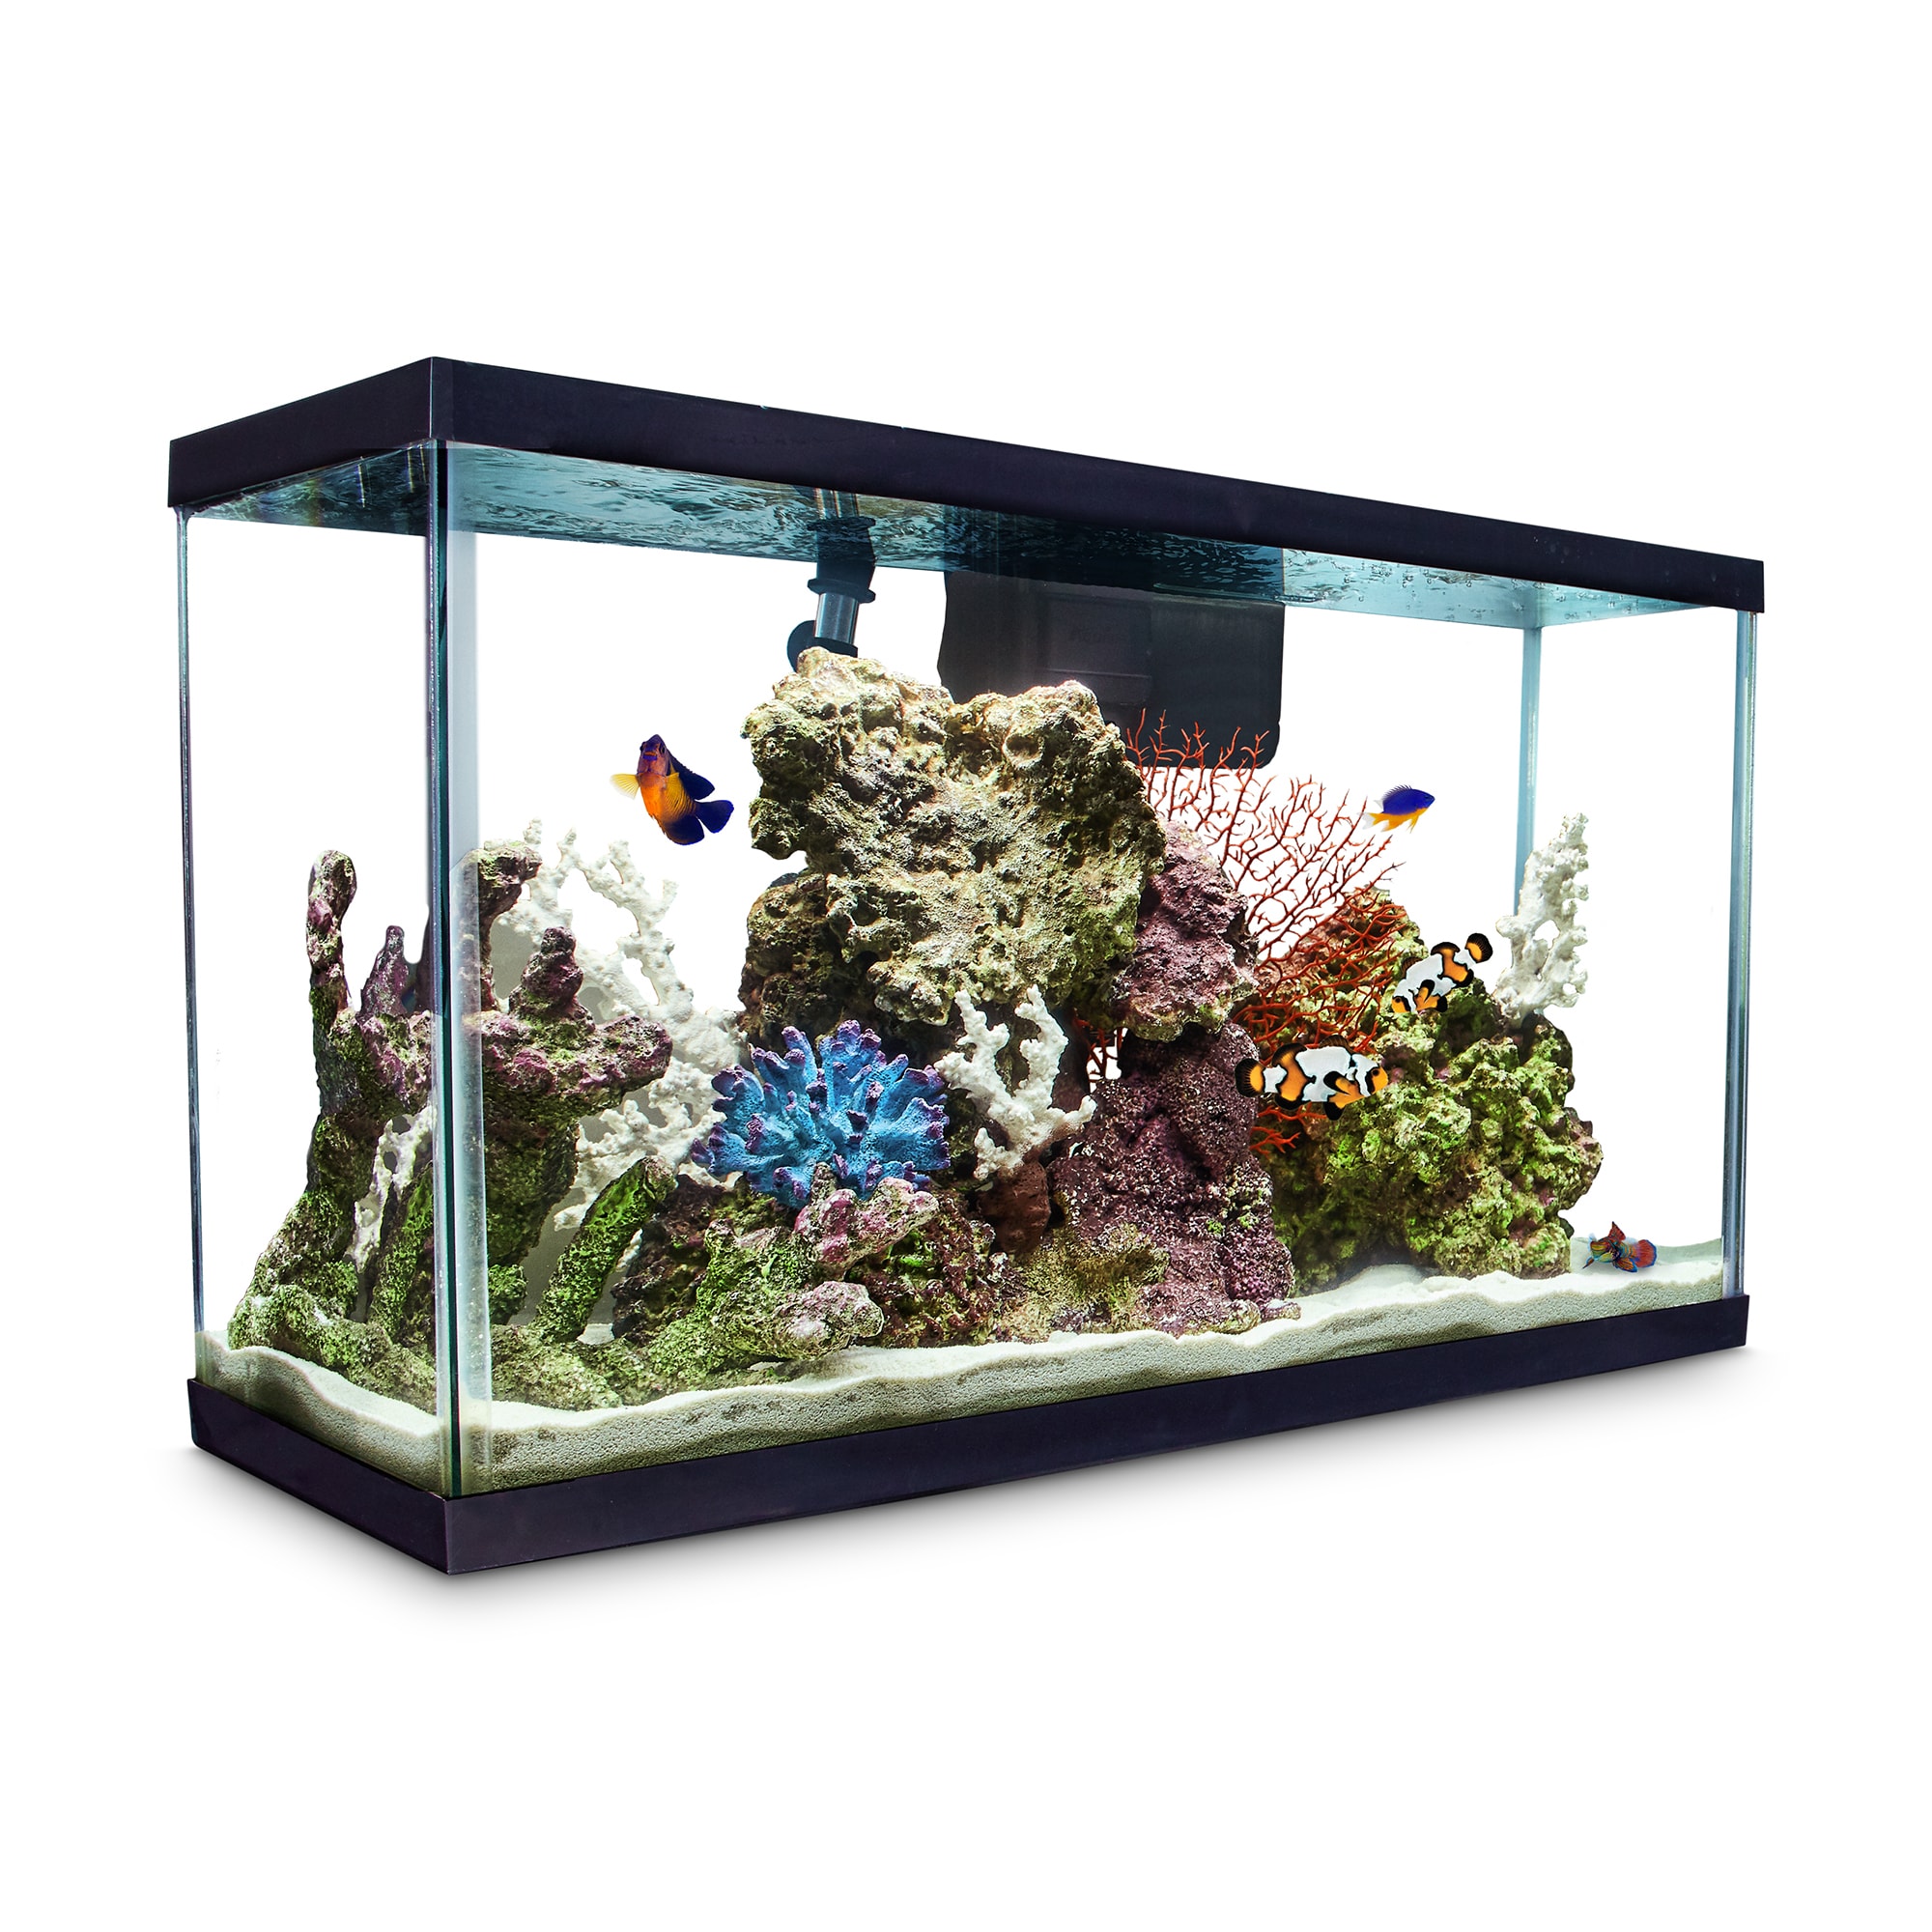 Aqueon Standard Glass Aquarium Tank 29 